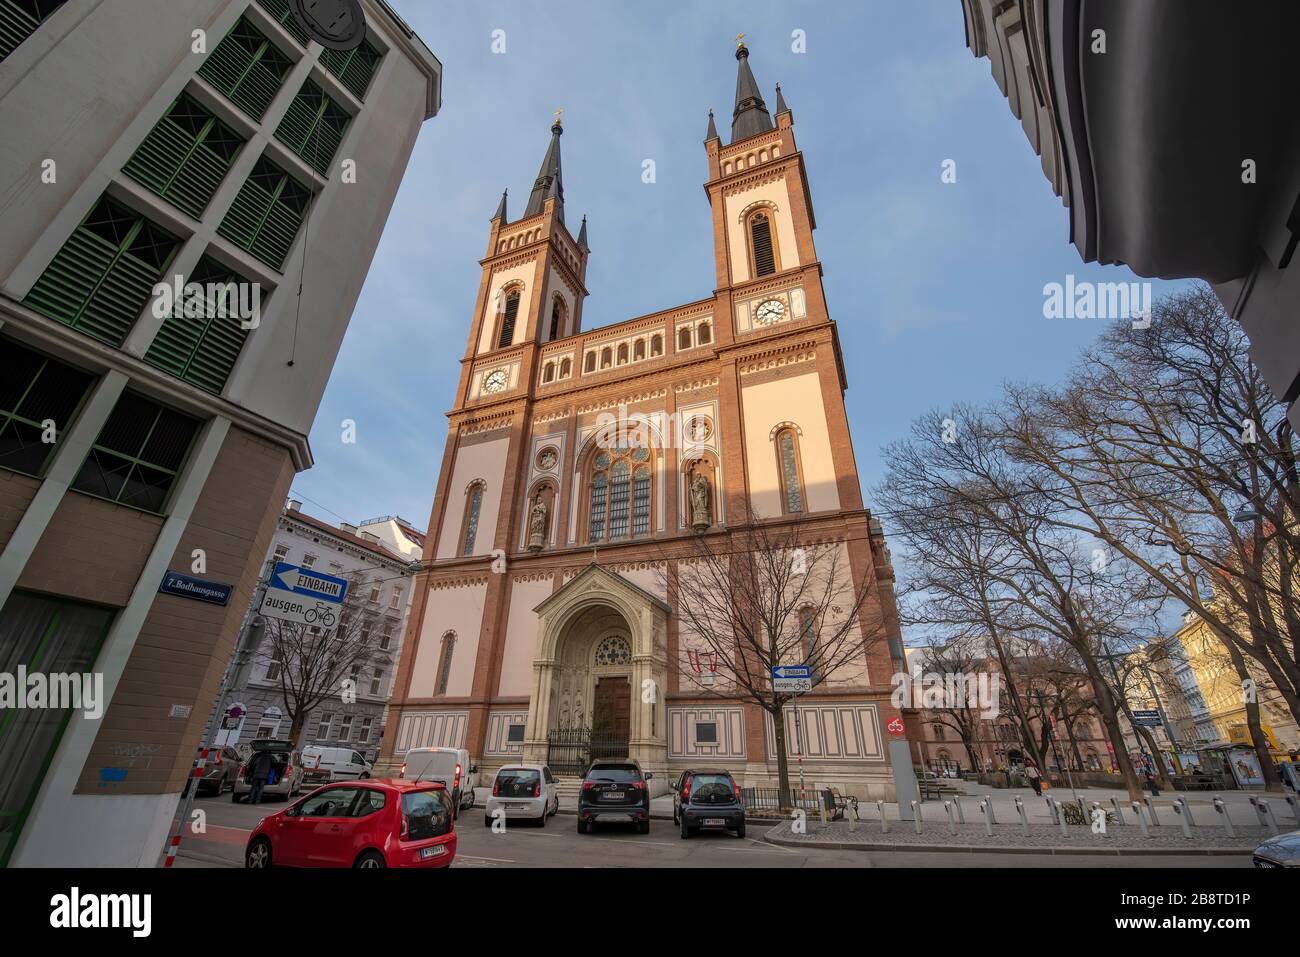 Wien, Österreich - die Altlerchenfelder Pfarrkirche zur sieben Schutzhütte in Wien, einer Römisch-Katholikin. Sie weist Klassizismus und Historismus auf. Stockfoto